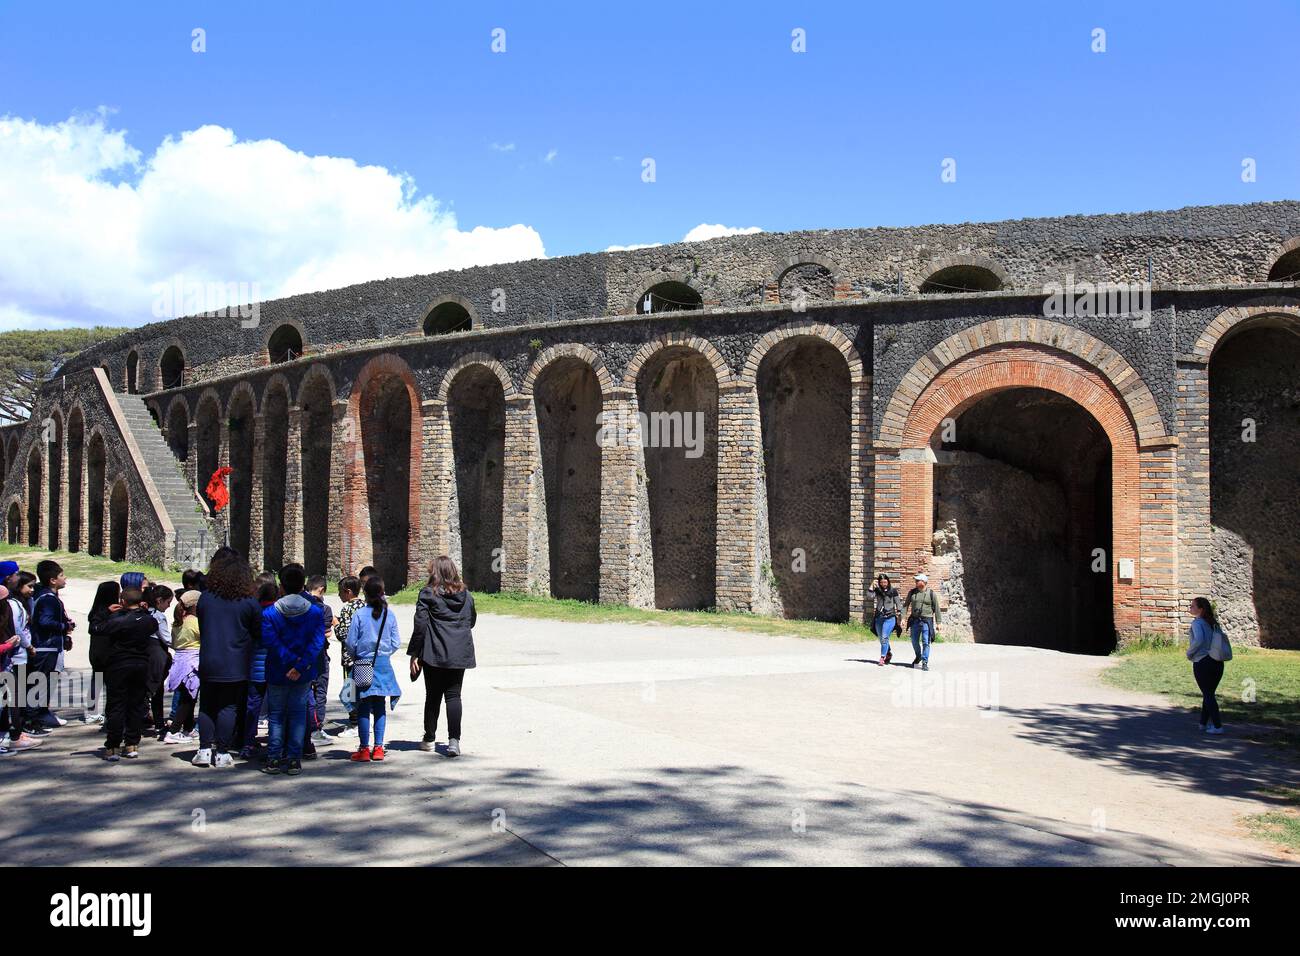 Das Theater, Pompeji, Antike Stadt in Kampanien am Golf von Neapel, beim Ausbruch des Vesuvs im Jahr 79 n. Chr. verschüttet, Italia Foto Stock